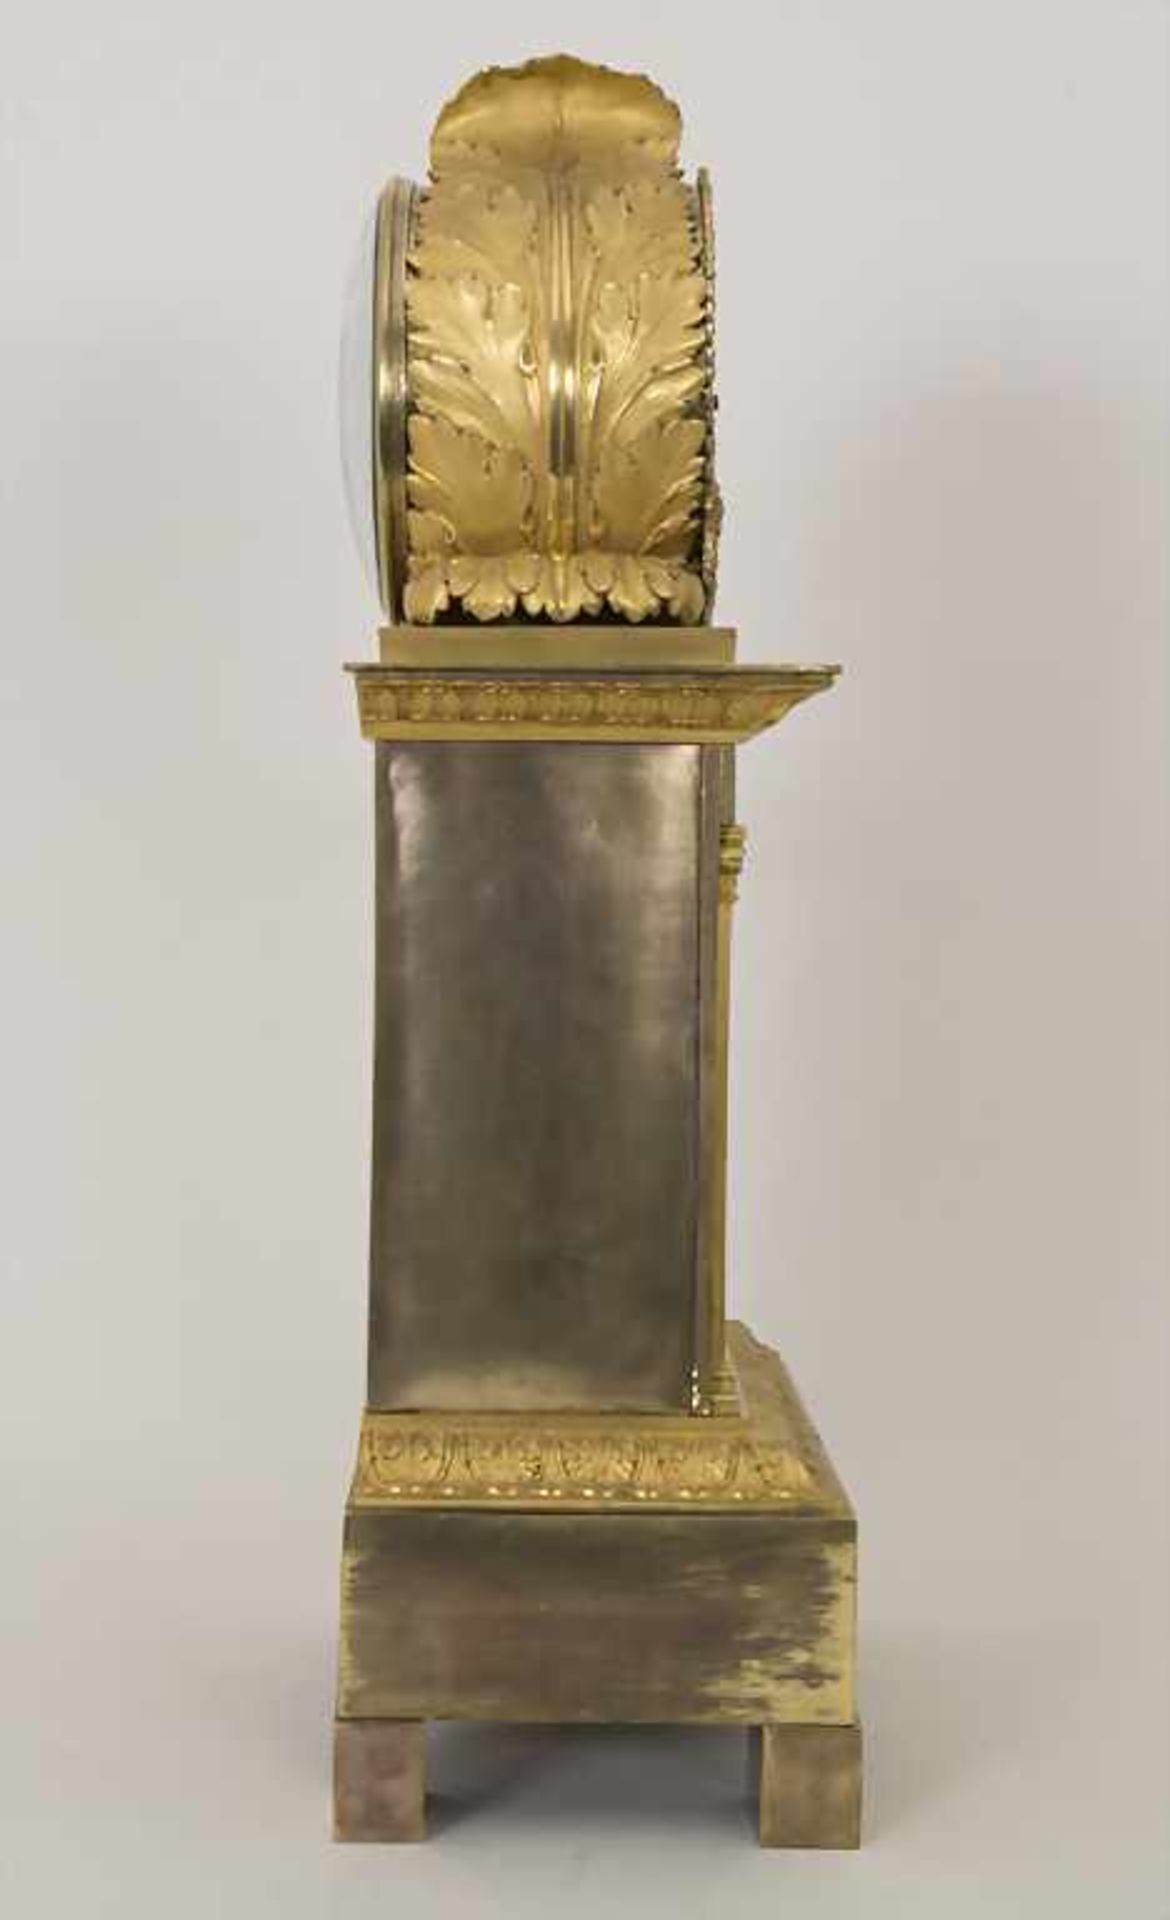 Empire Pendule 'Die Künste' / An Empire clock 'The fine arts', Paris, um 1800 - Bild 4 aus 11